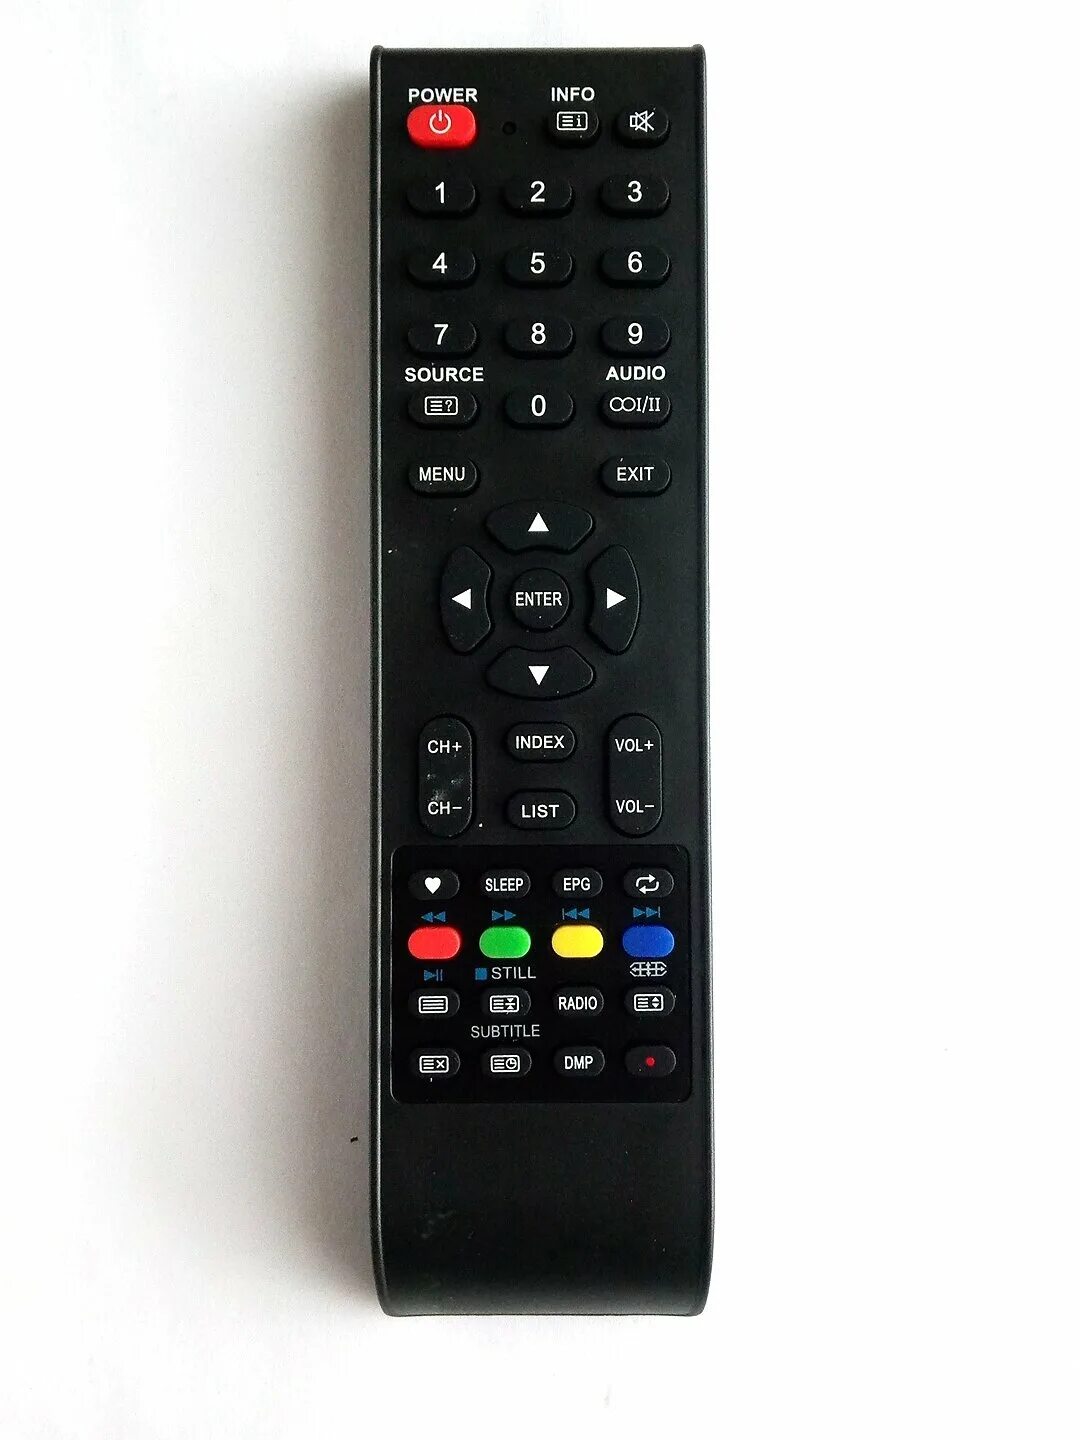 DEXP f32d8000c пульт. Телевизор DEXP JKT-106b-2 пульт расшифровка кнопок. DEXP 24hkn1. Телевизор DEXP JKT-106b-2 пульт что обозначают кнопки. Пульт дексп купить